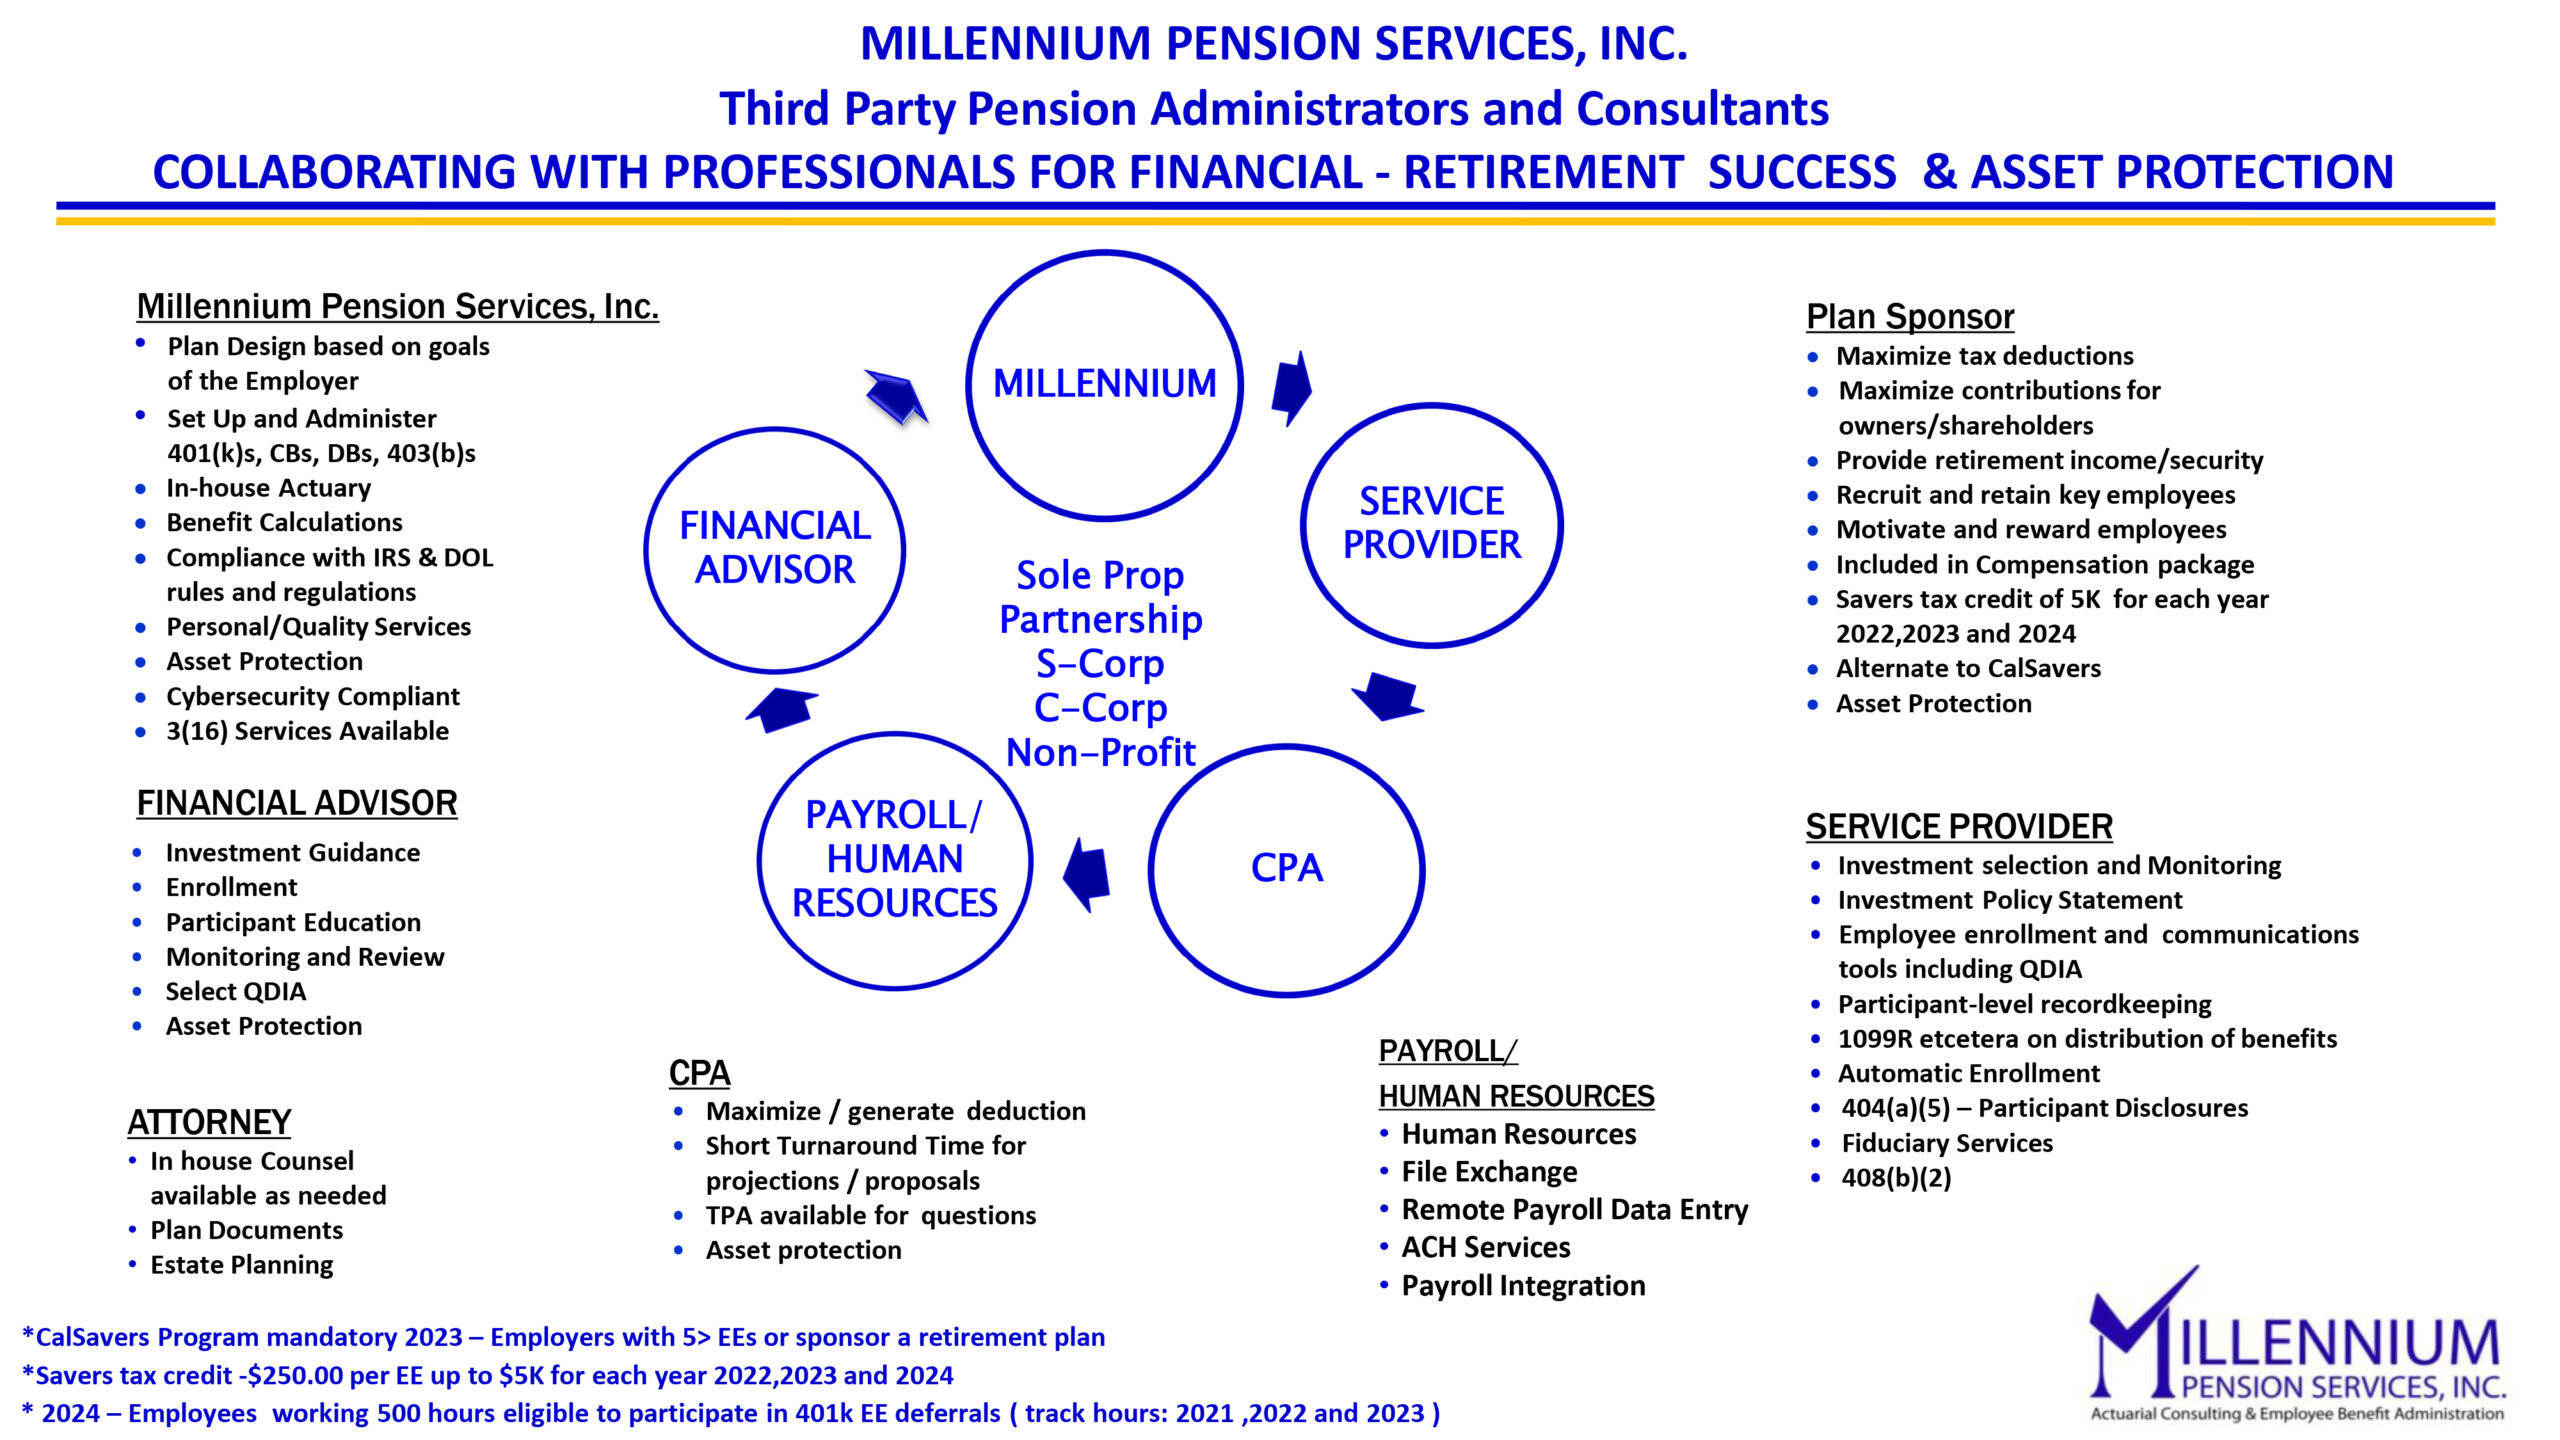 Millennium Pension Services team approach 